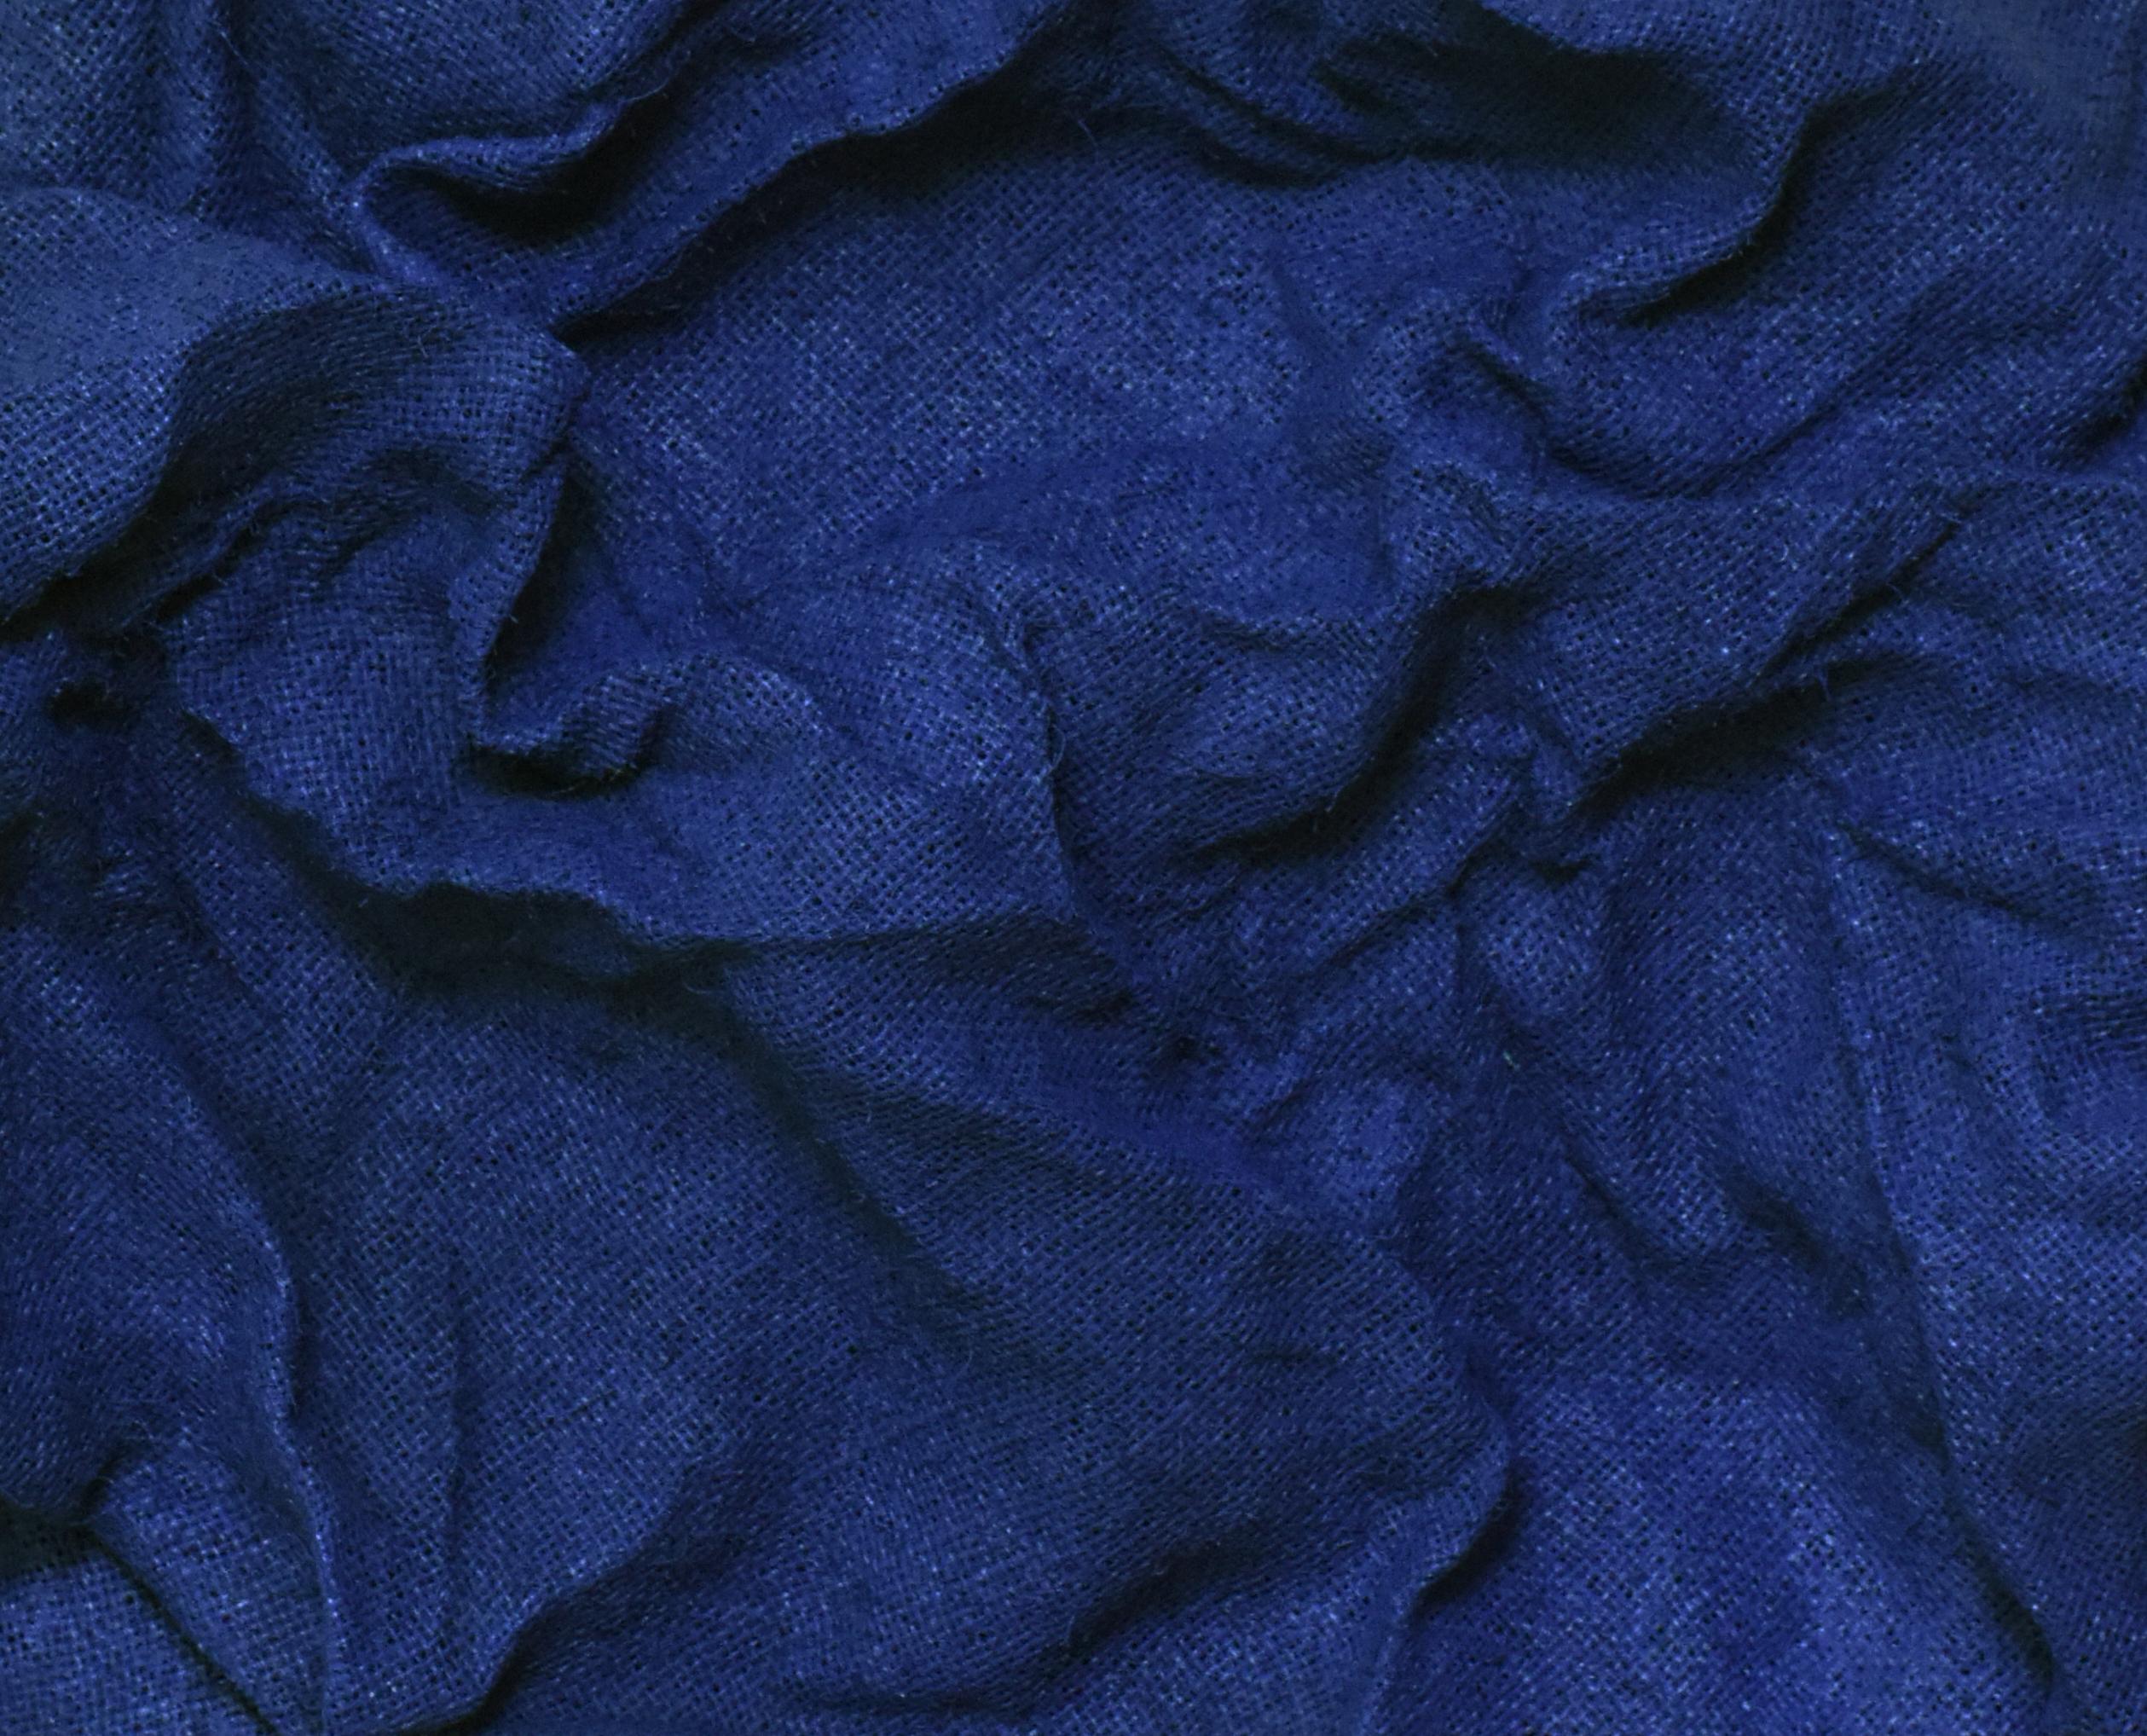 Fliesen in Marineblau (Marineblau, Dunkelblau, Hartstoff, zeitgenössisches Design, Textil (Blau), Abstract Sculpture, von Chloe Hedden